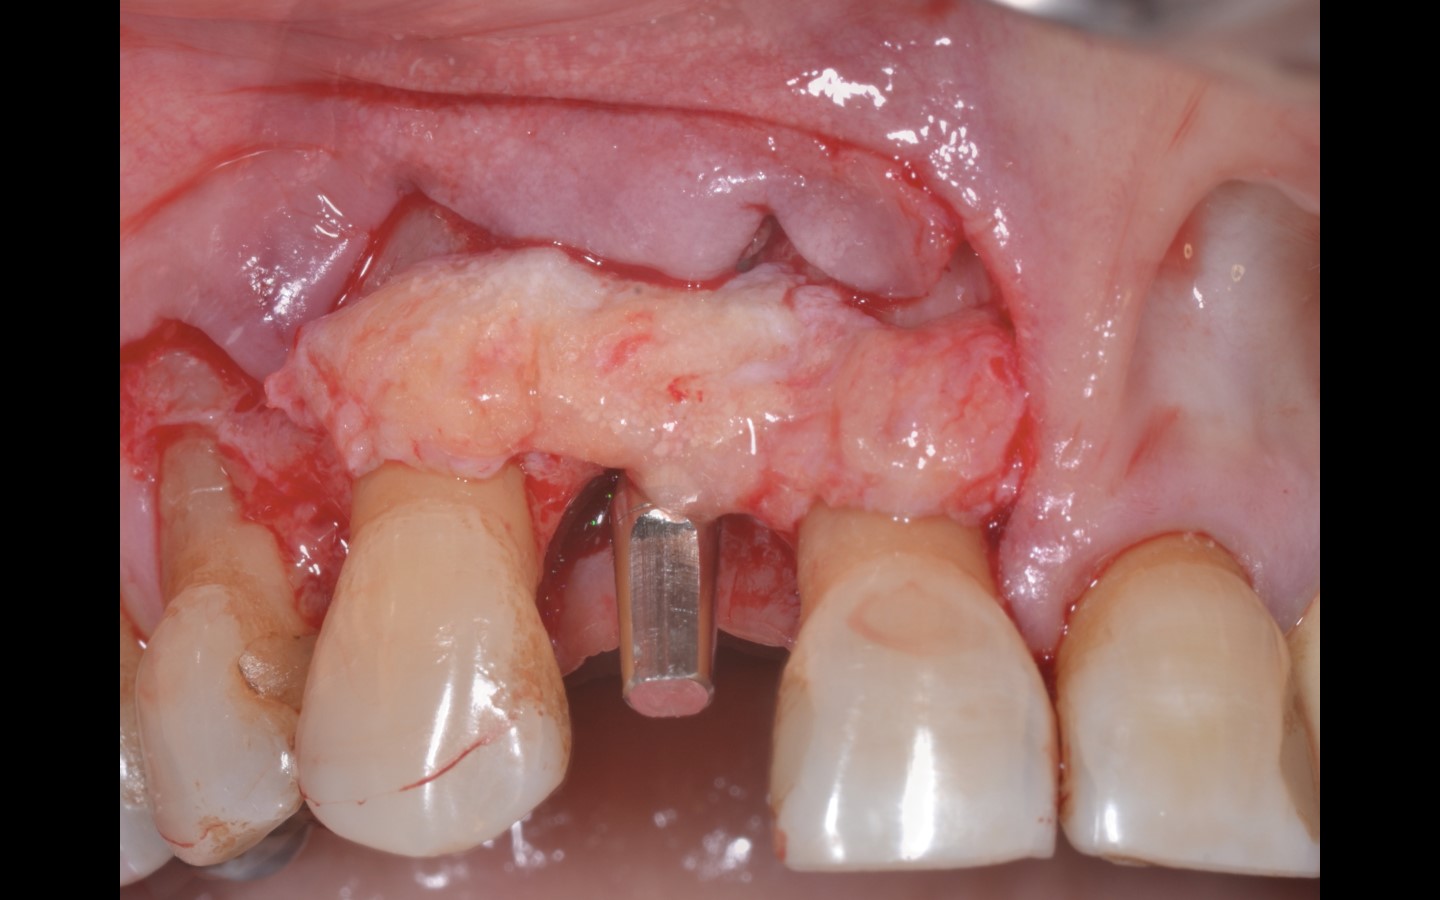 image11 - Reabilitação dento-alveolar com implante Arcsys, enxerto conjuntivo e substituto ósseo Nanosynt